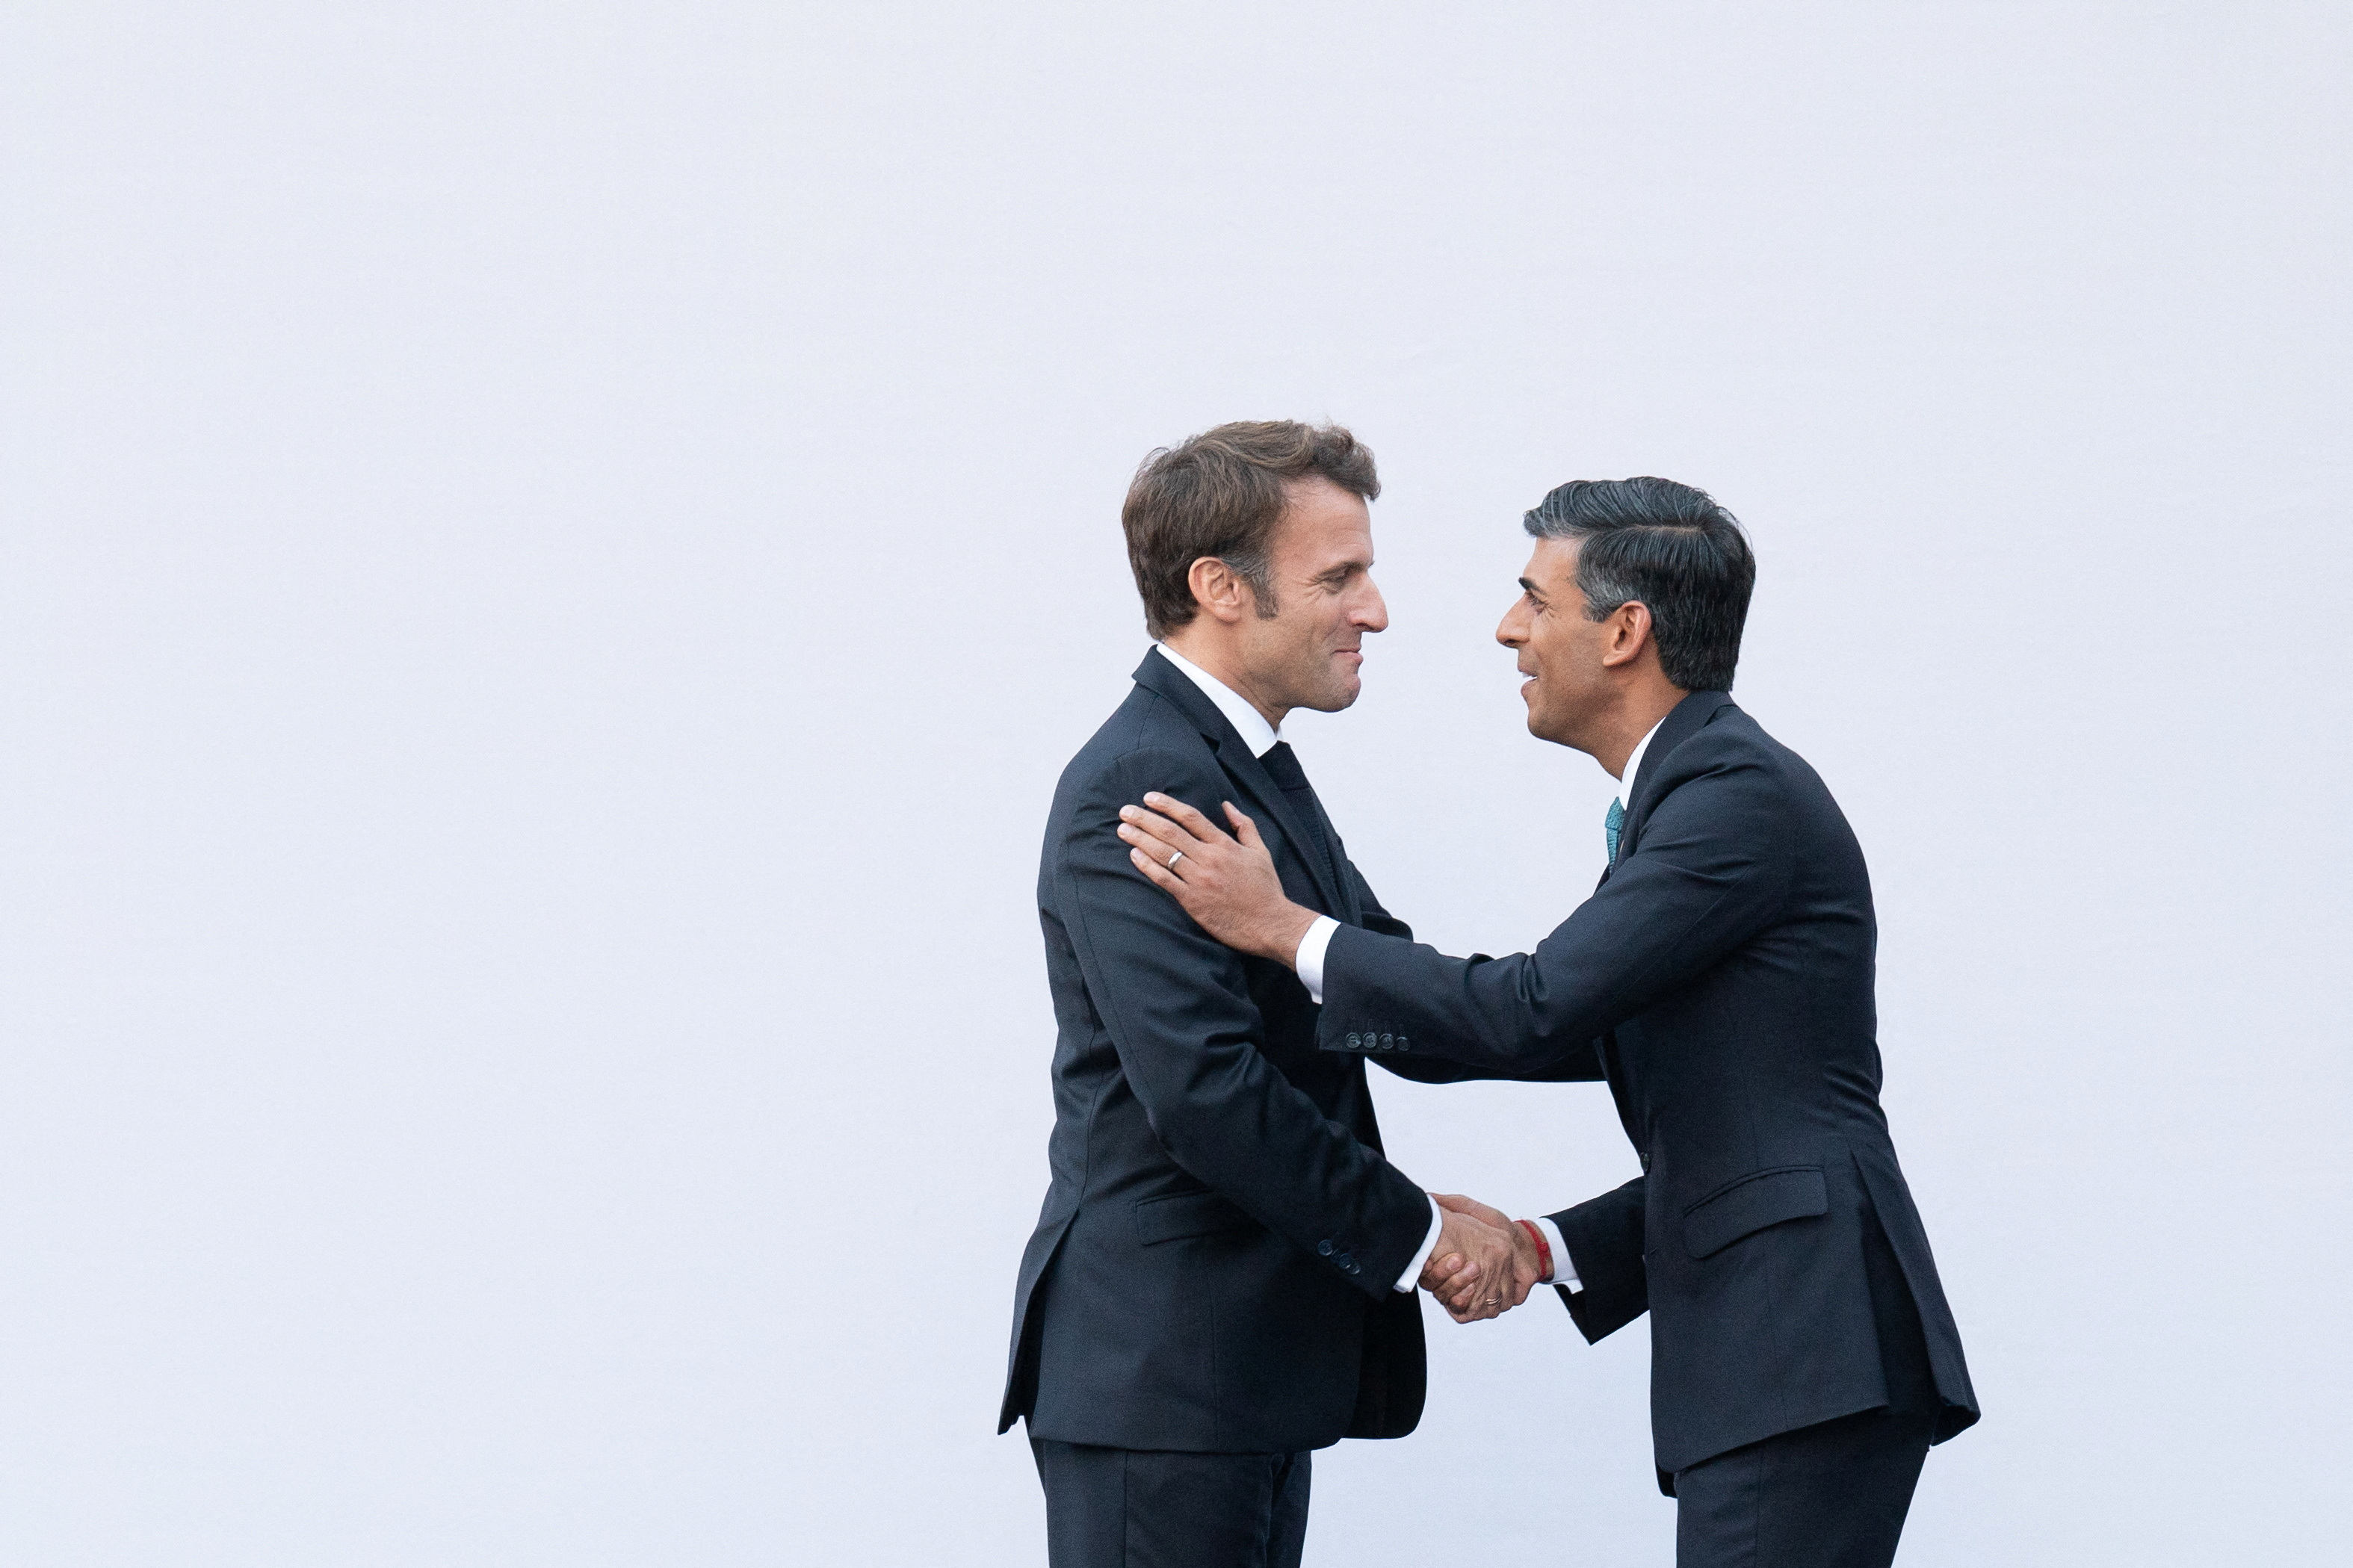 Emmanuel Macron reçoit Rishi Sunak pour relancer la relation franco-britannique